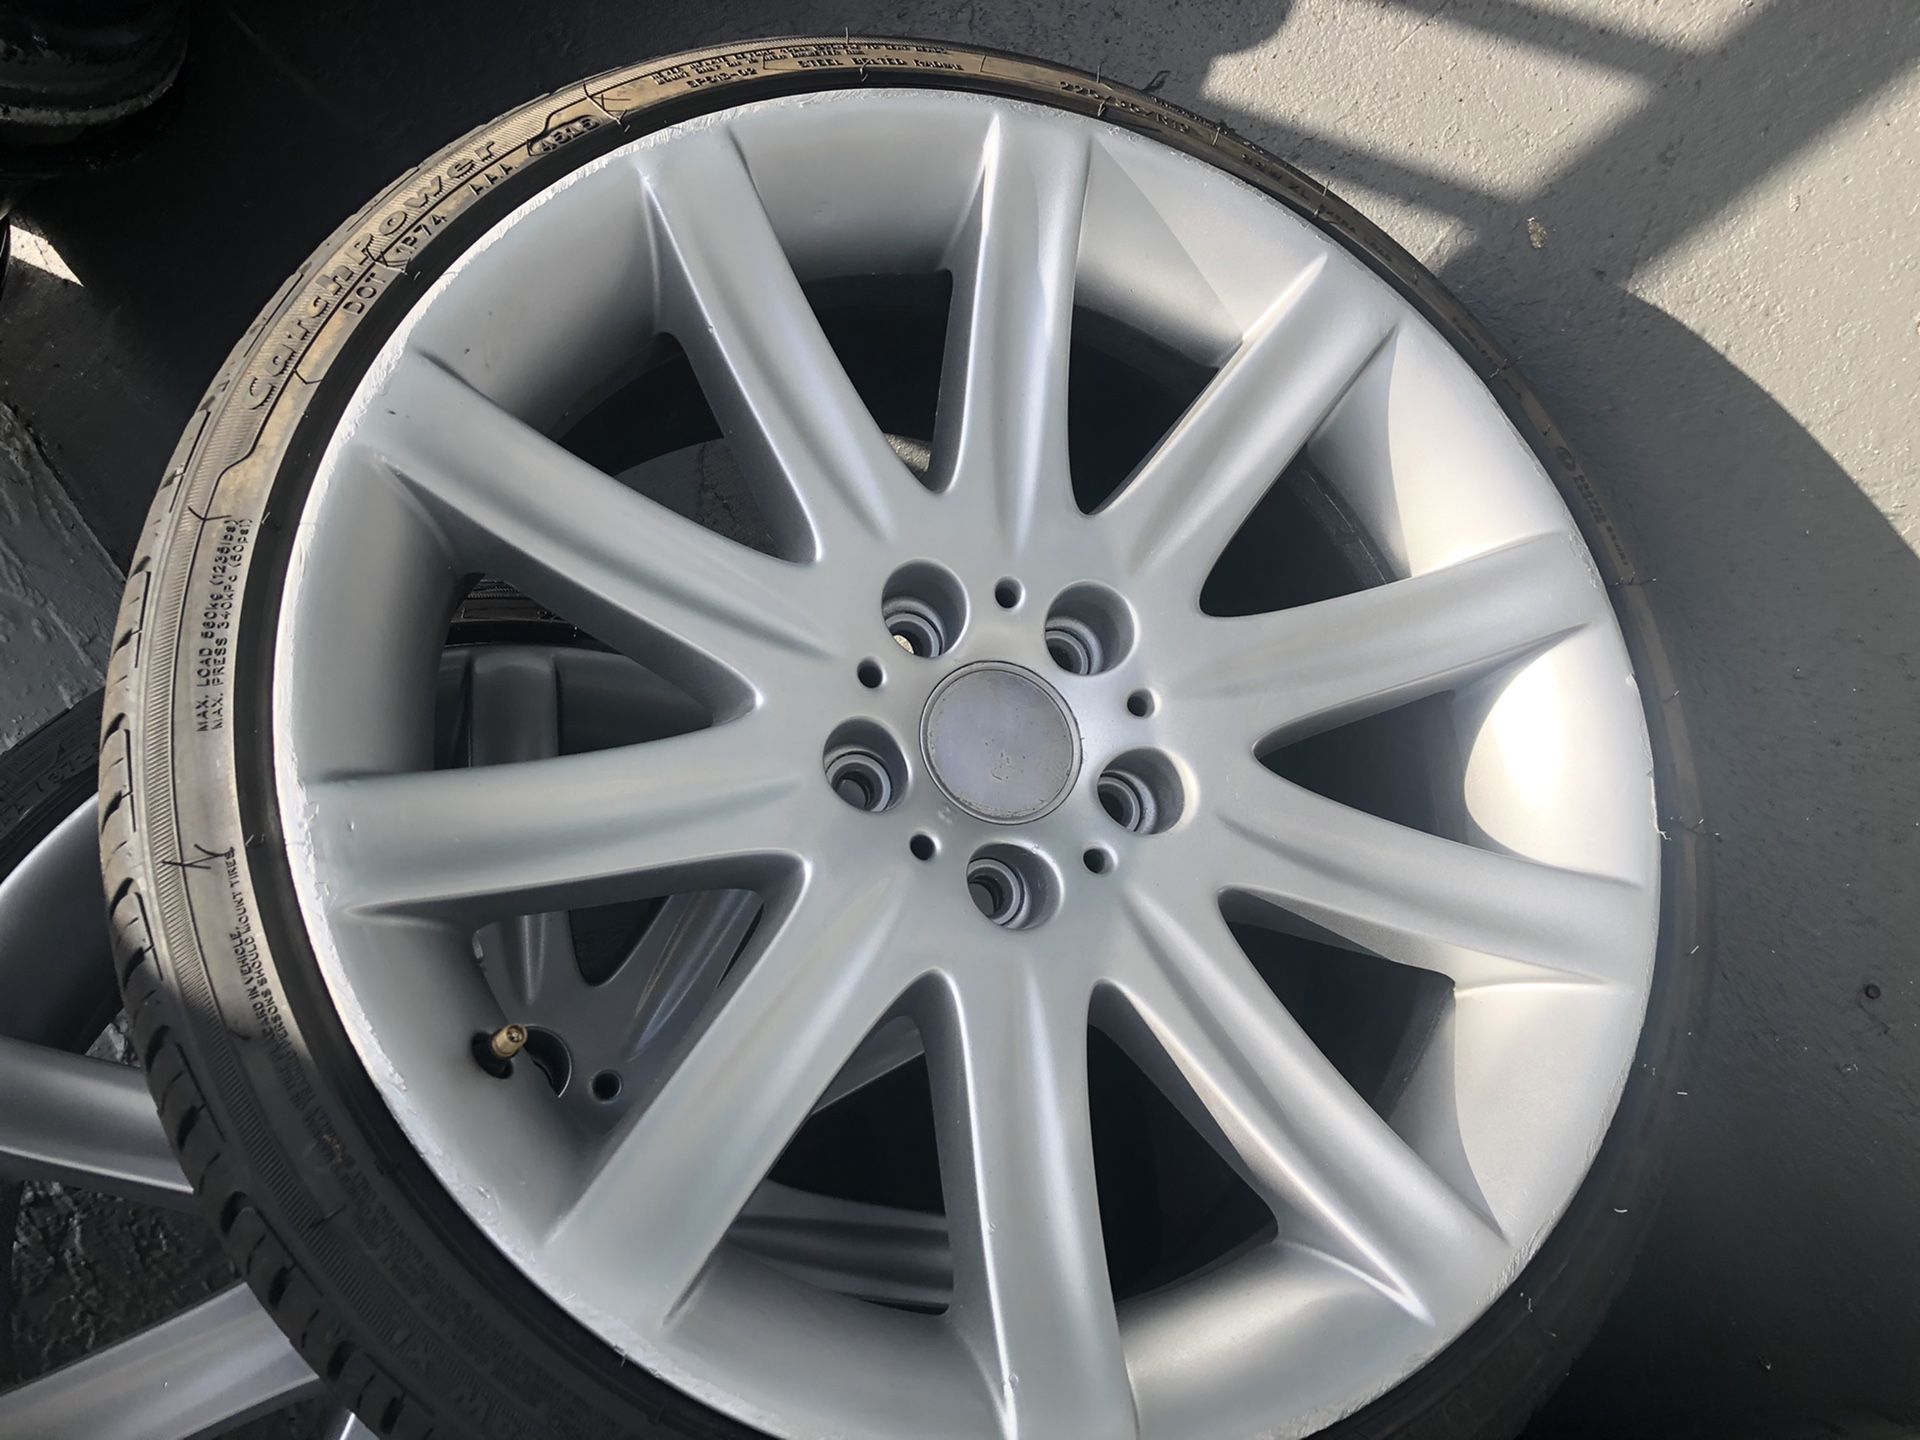 19” BMW wheels